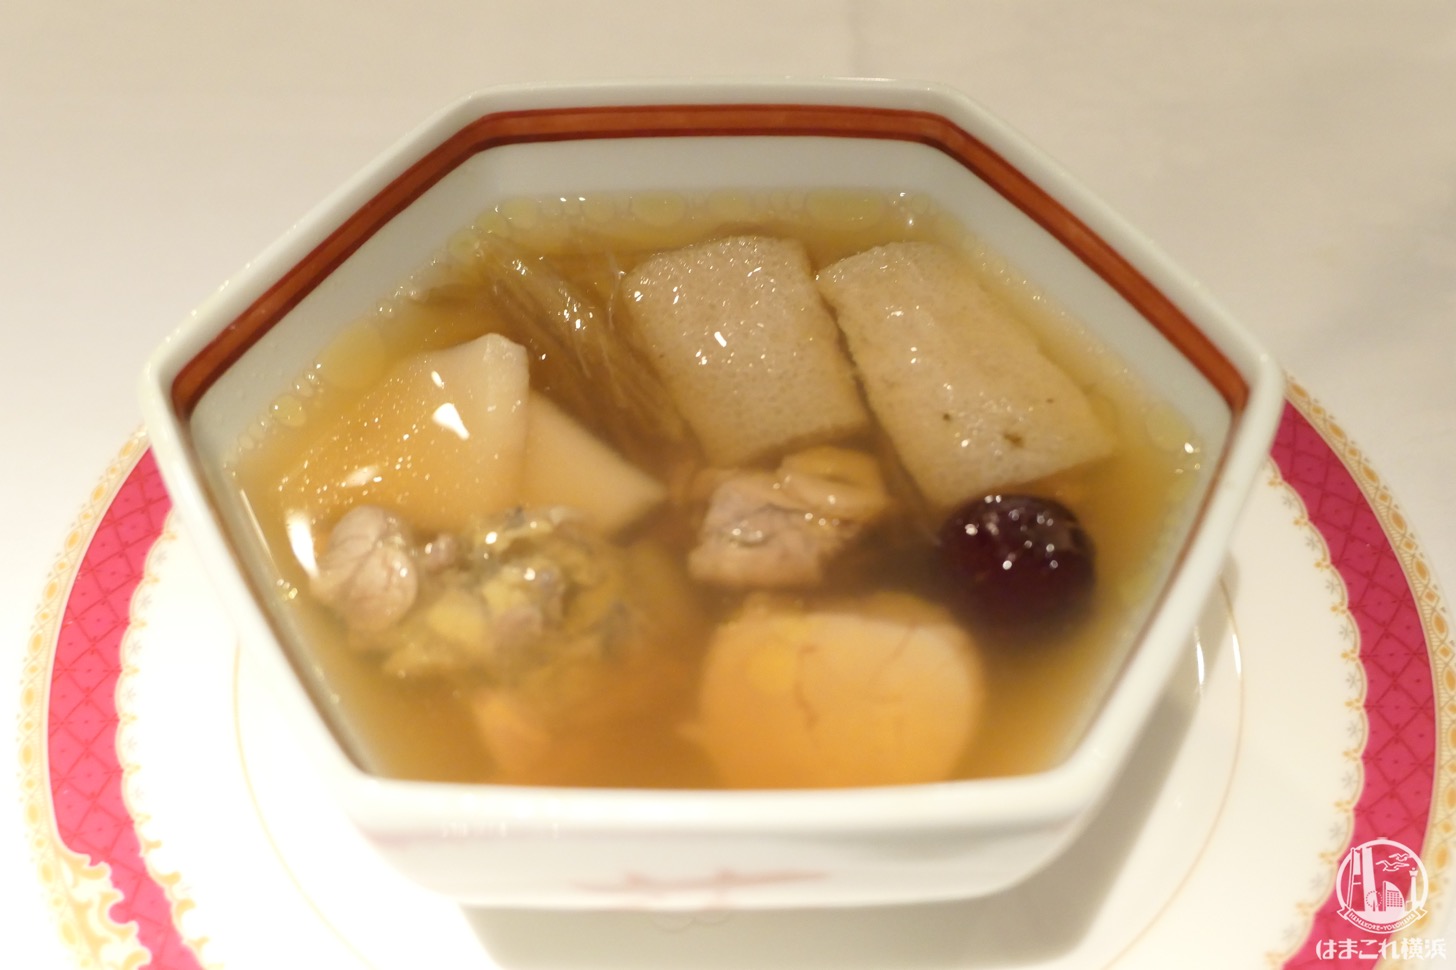 スッポンと気仙沼産フカヒレの薬膳スープ